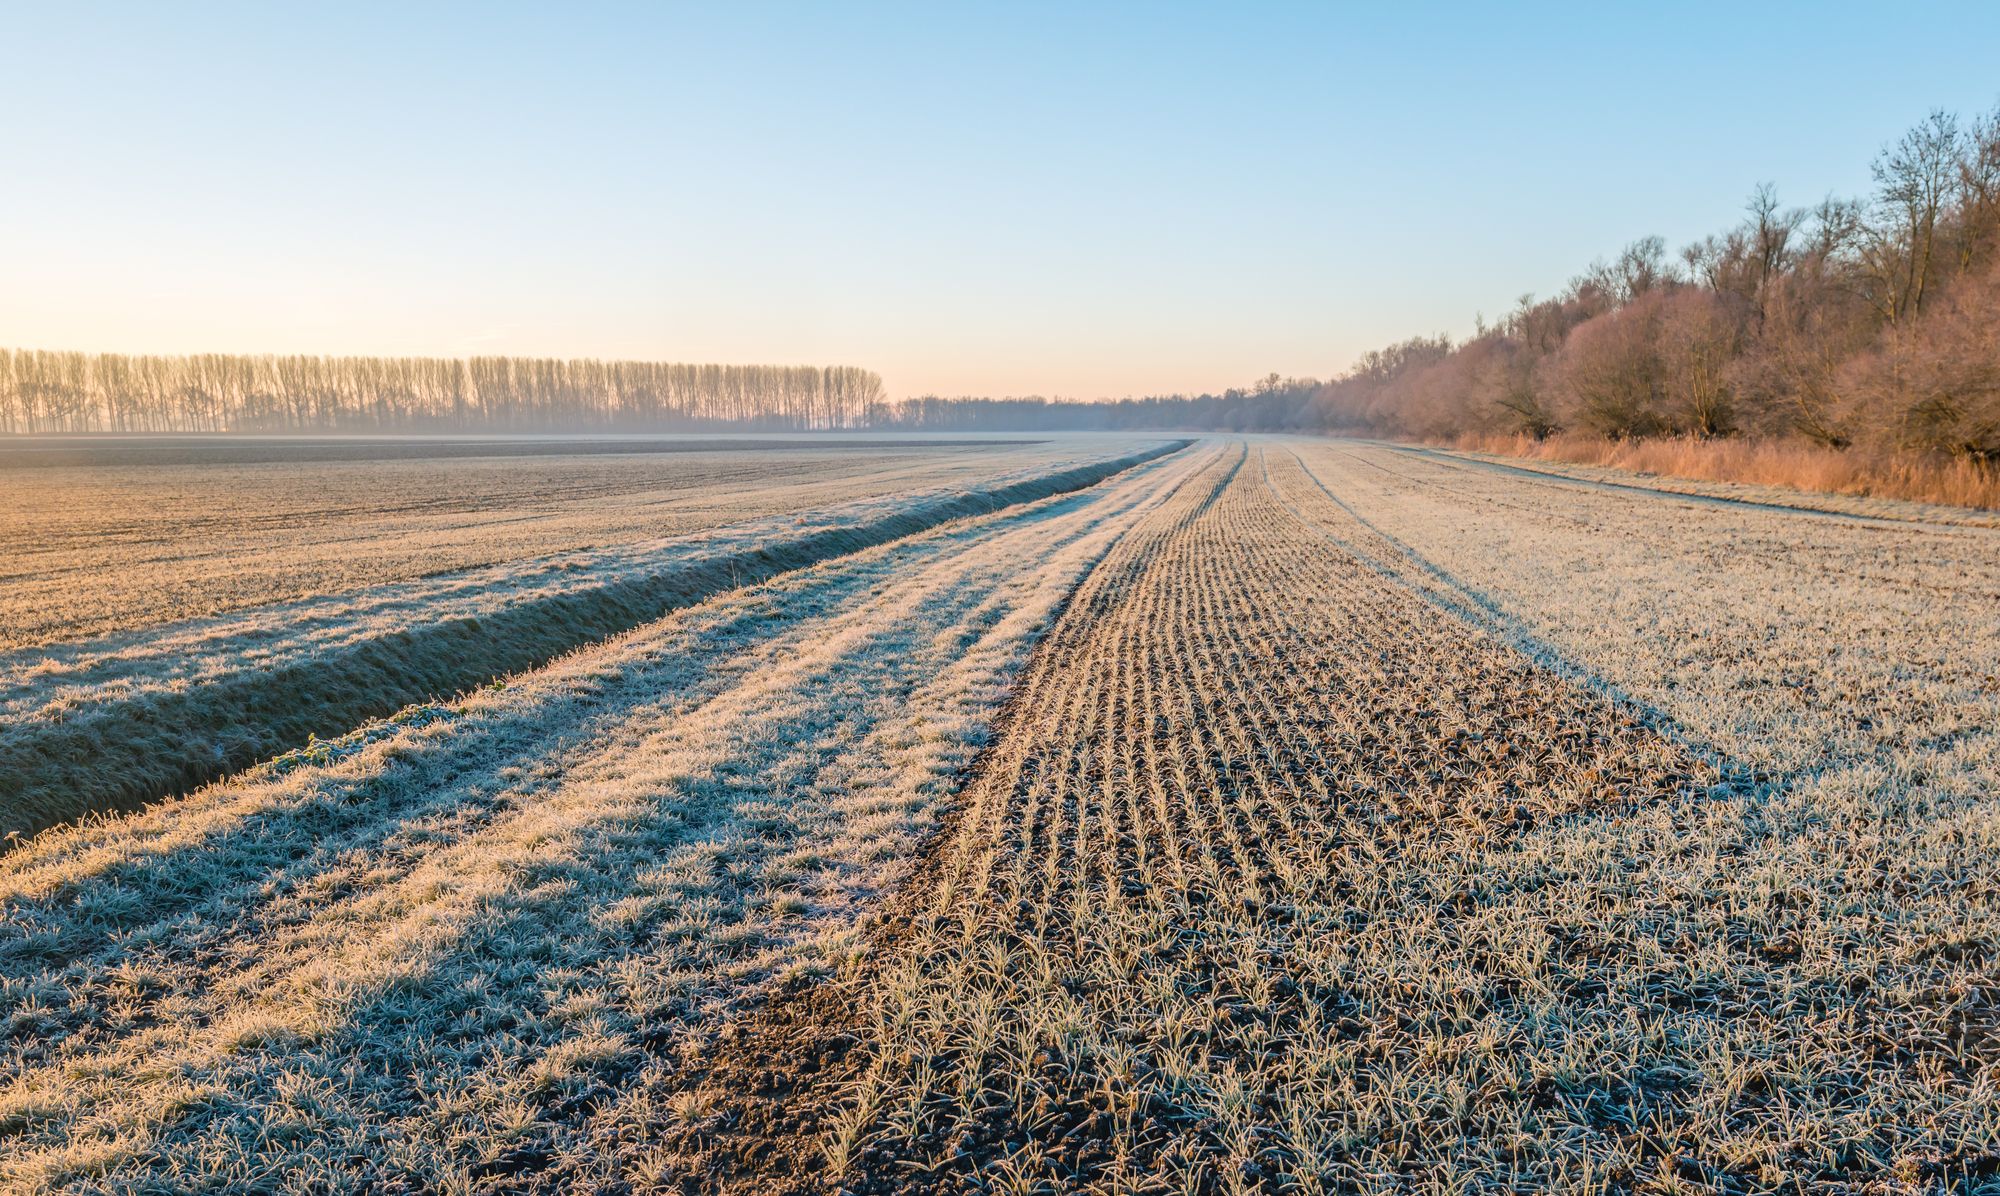 Des températures hivernales aux bienfaits agricoles